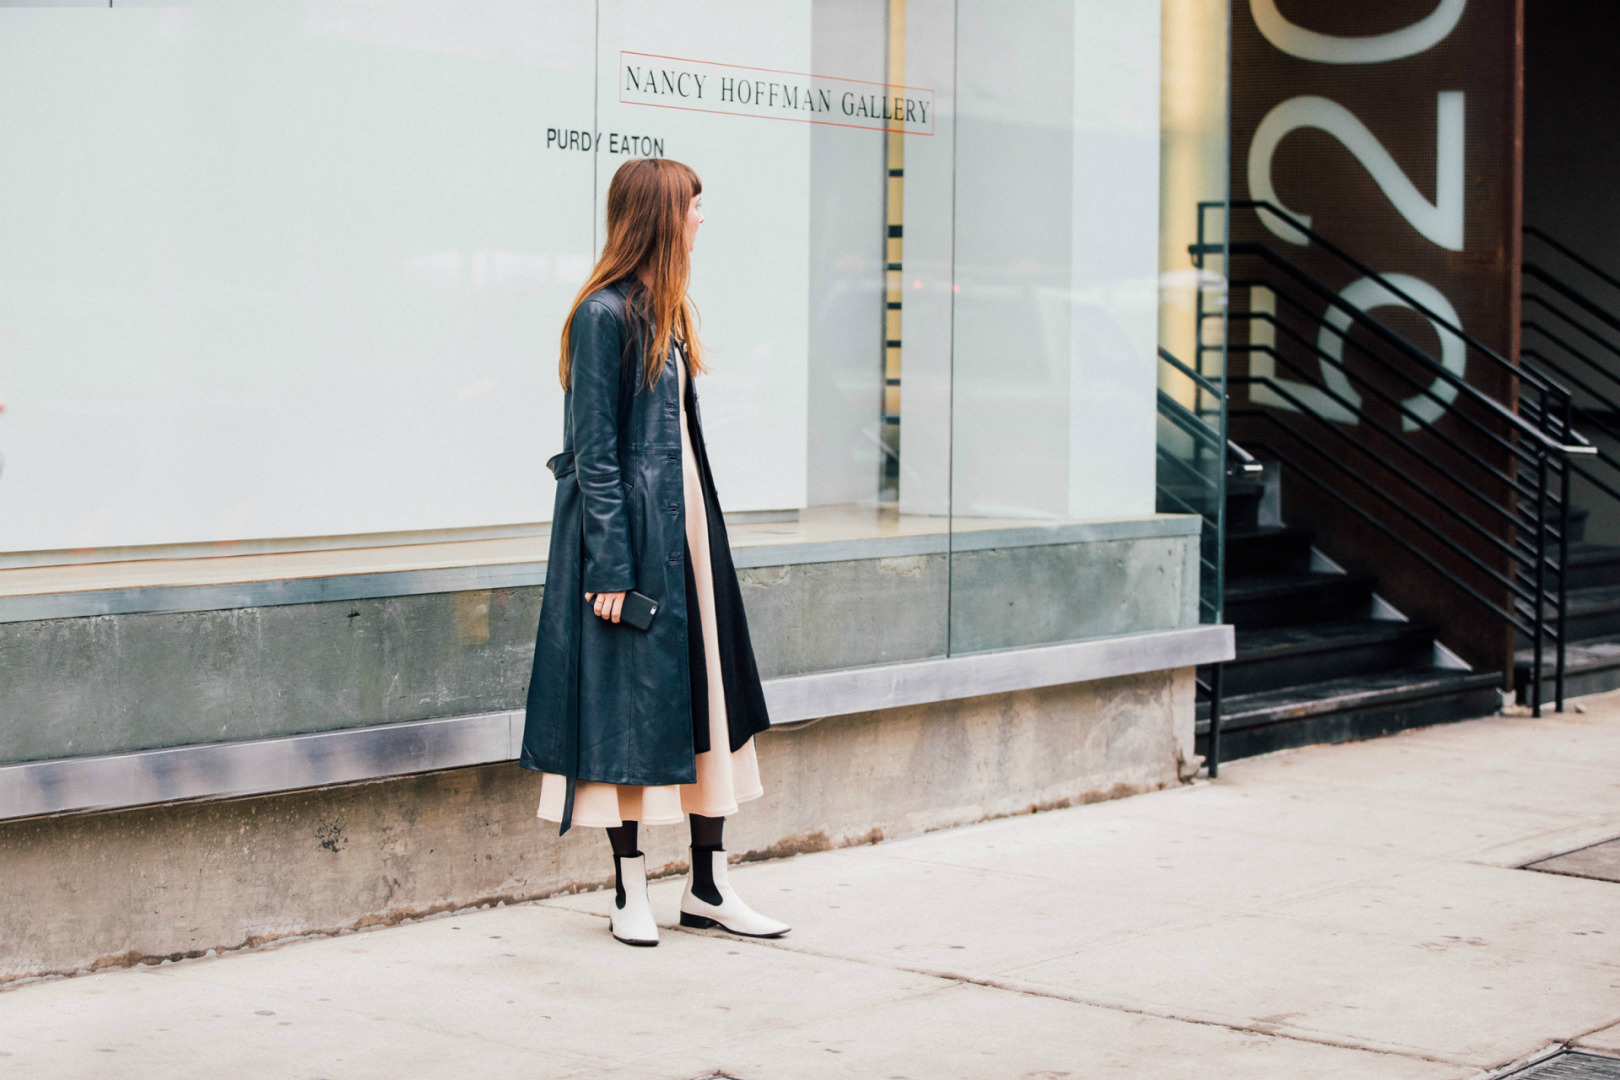 Sokak Stili: 2017 Sonbahar/Kış New York Moda Haftası 3. ve 4. Gün